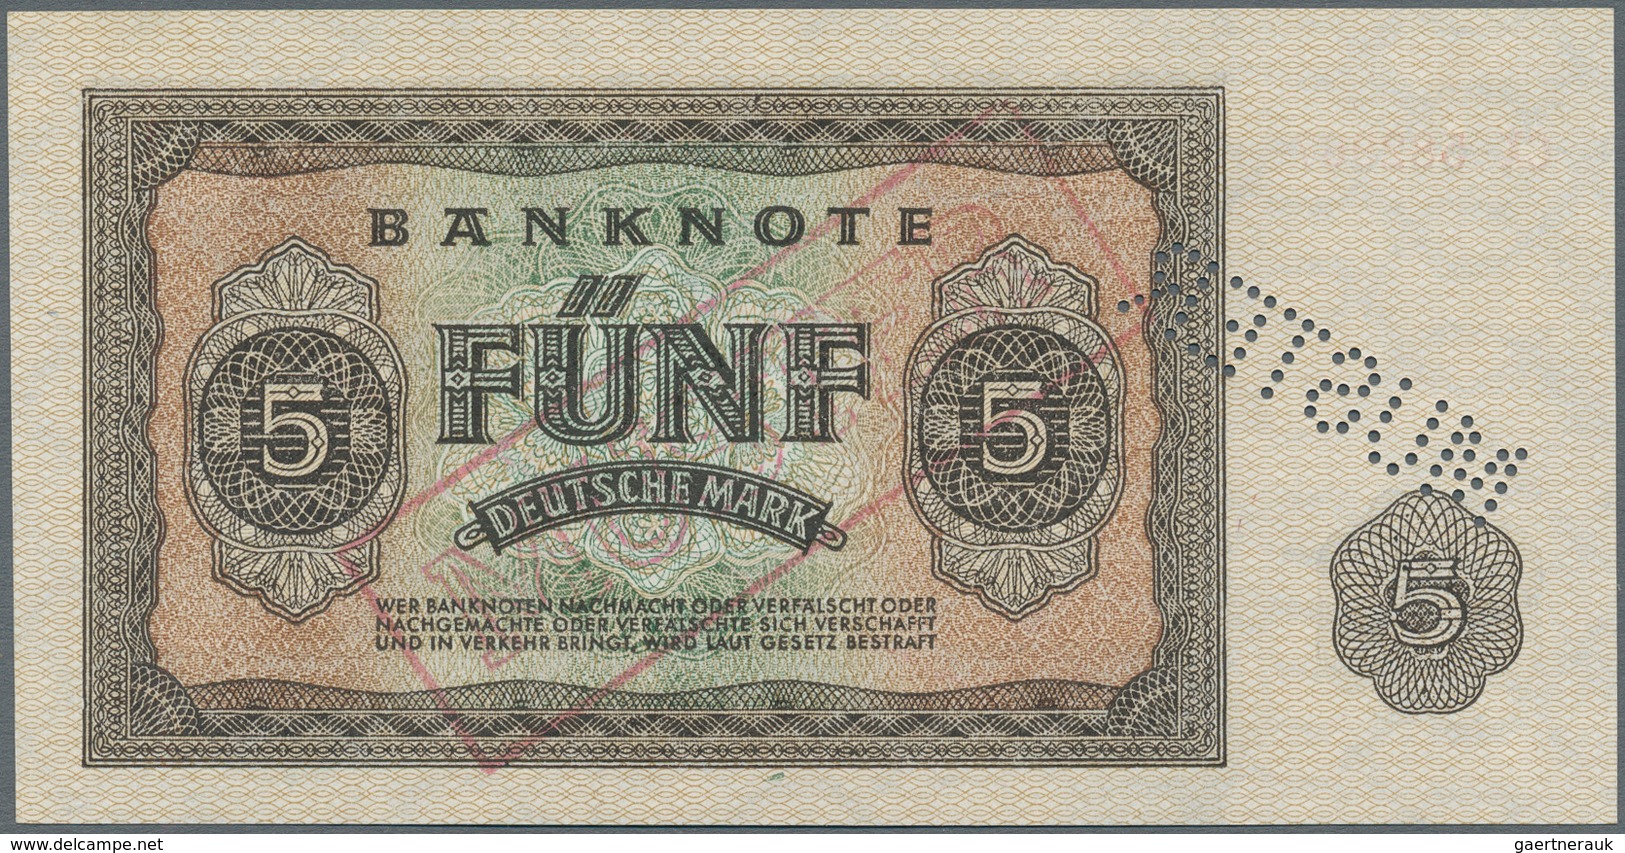 Deutschland - DDR: Mustersatz der Deutschen Notenbank 1948 von 50 Pfennig bis 1000 Mark 1948, alle a